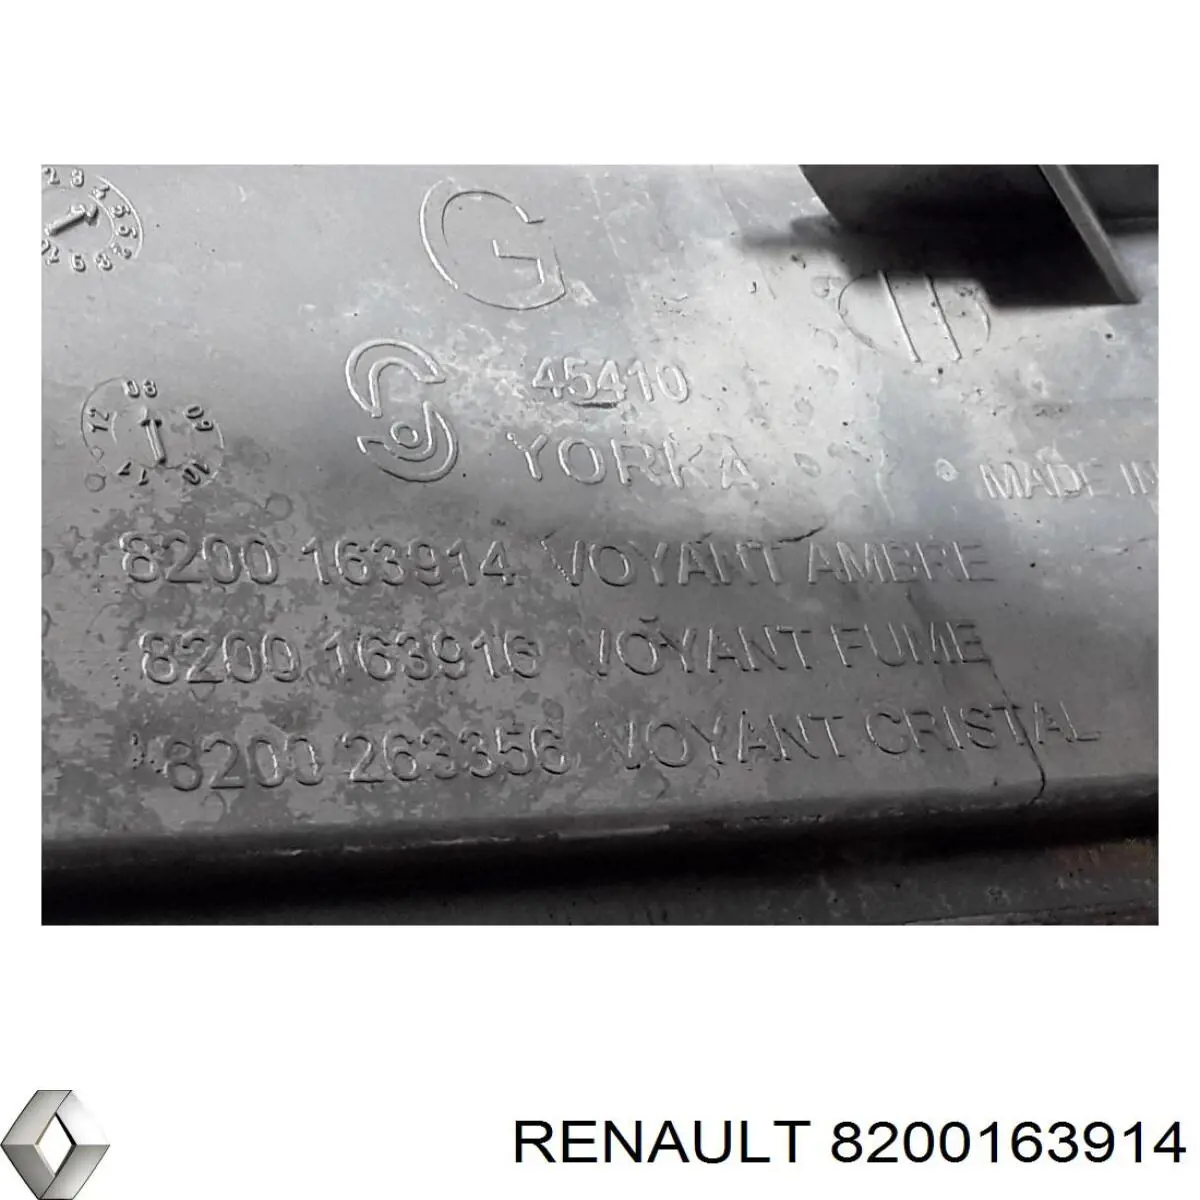 8200163914 Renault (RVI) pisca-pisca esquerdo